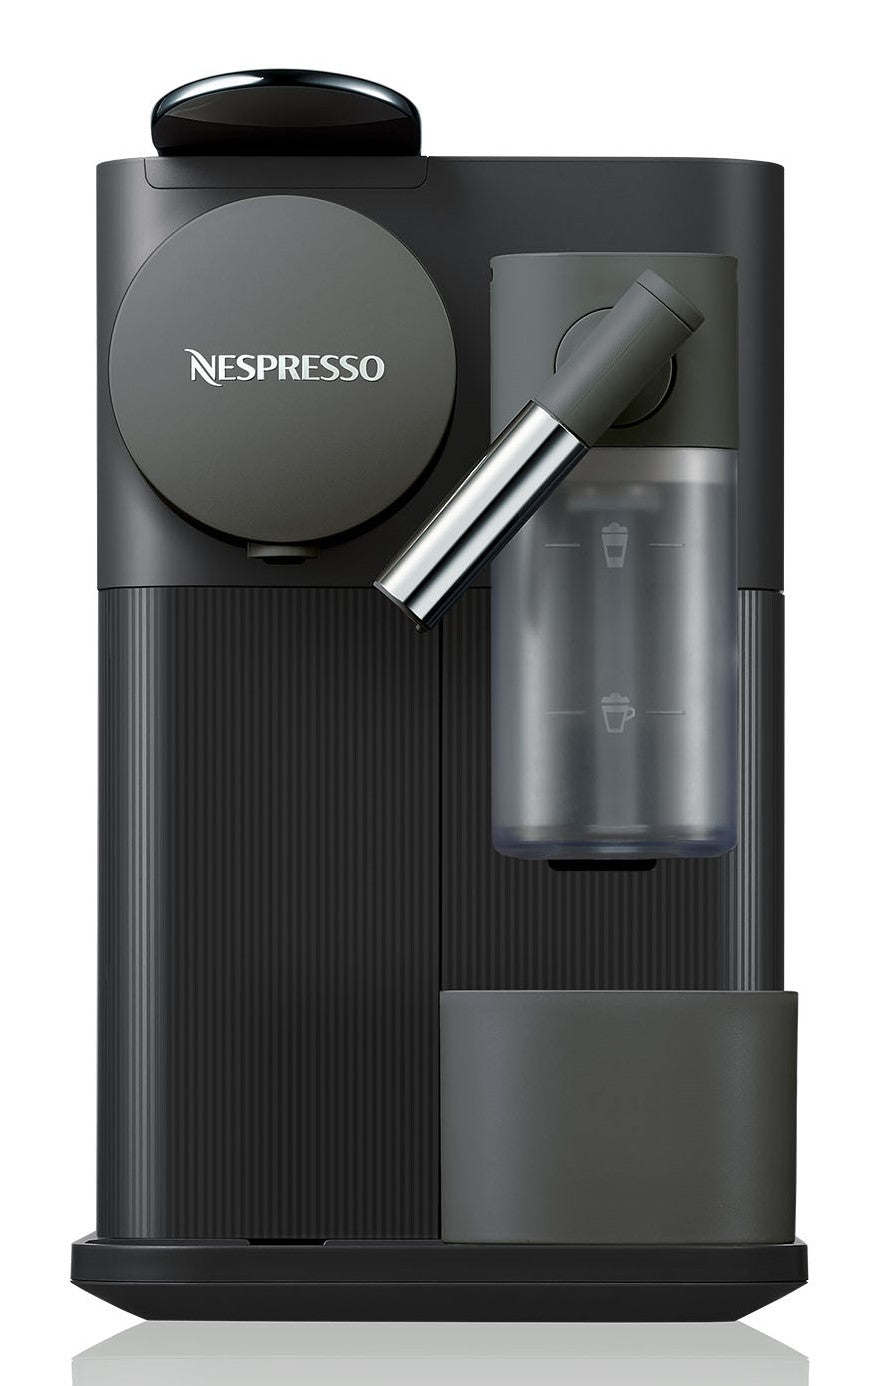 Nespresso Lattissima One Espresso Machine by DeLonghi - Black